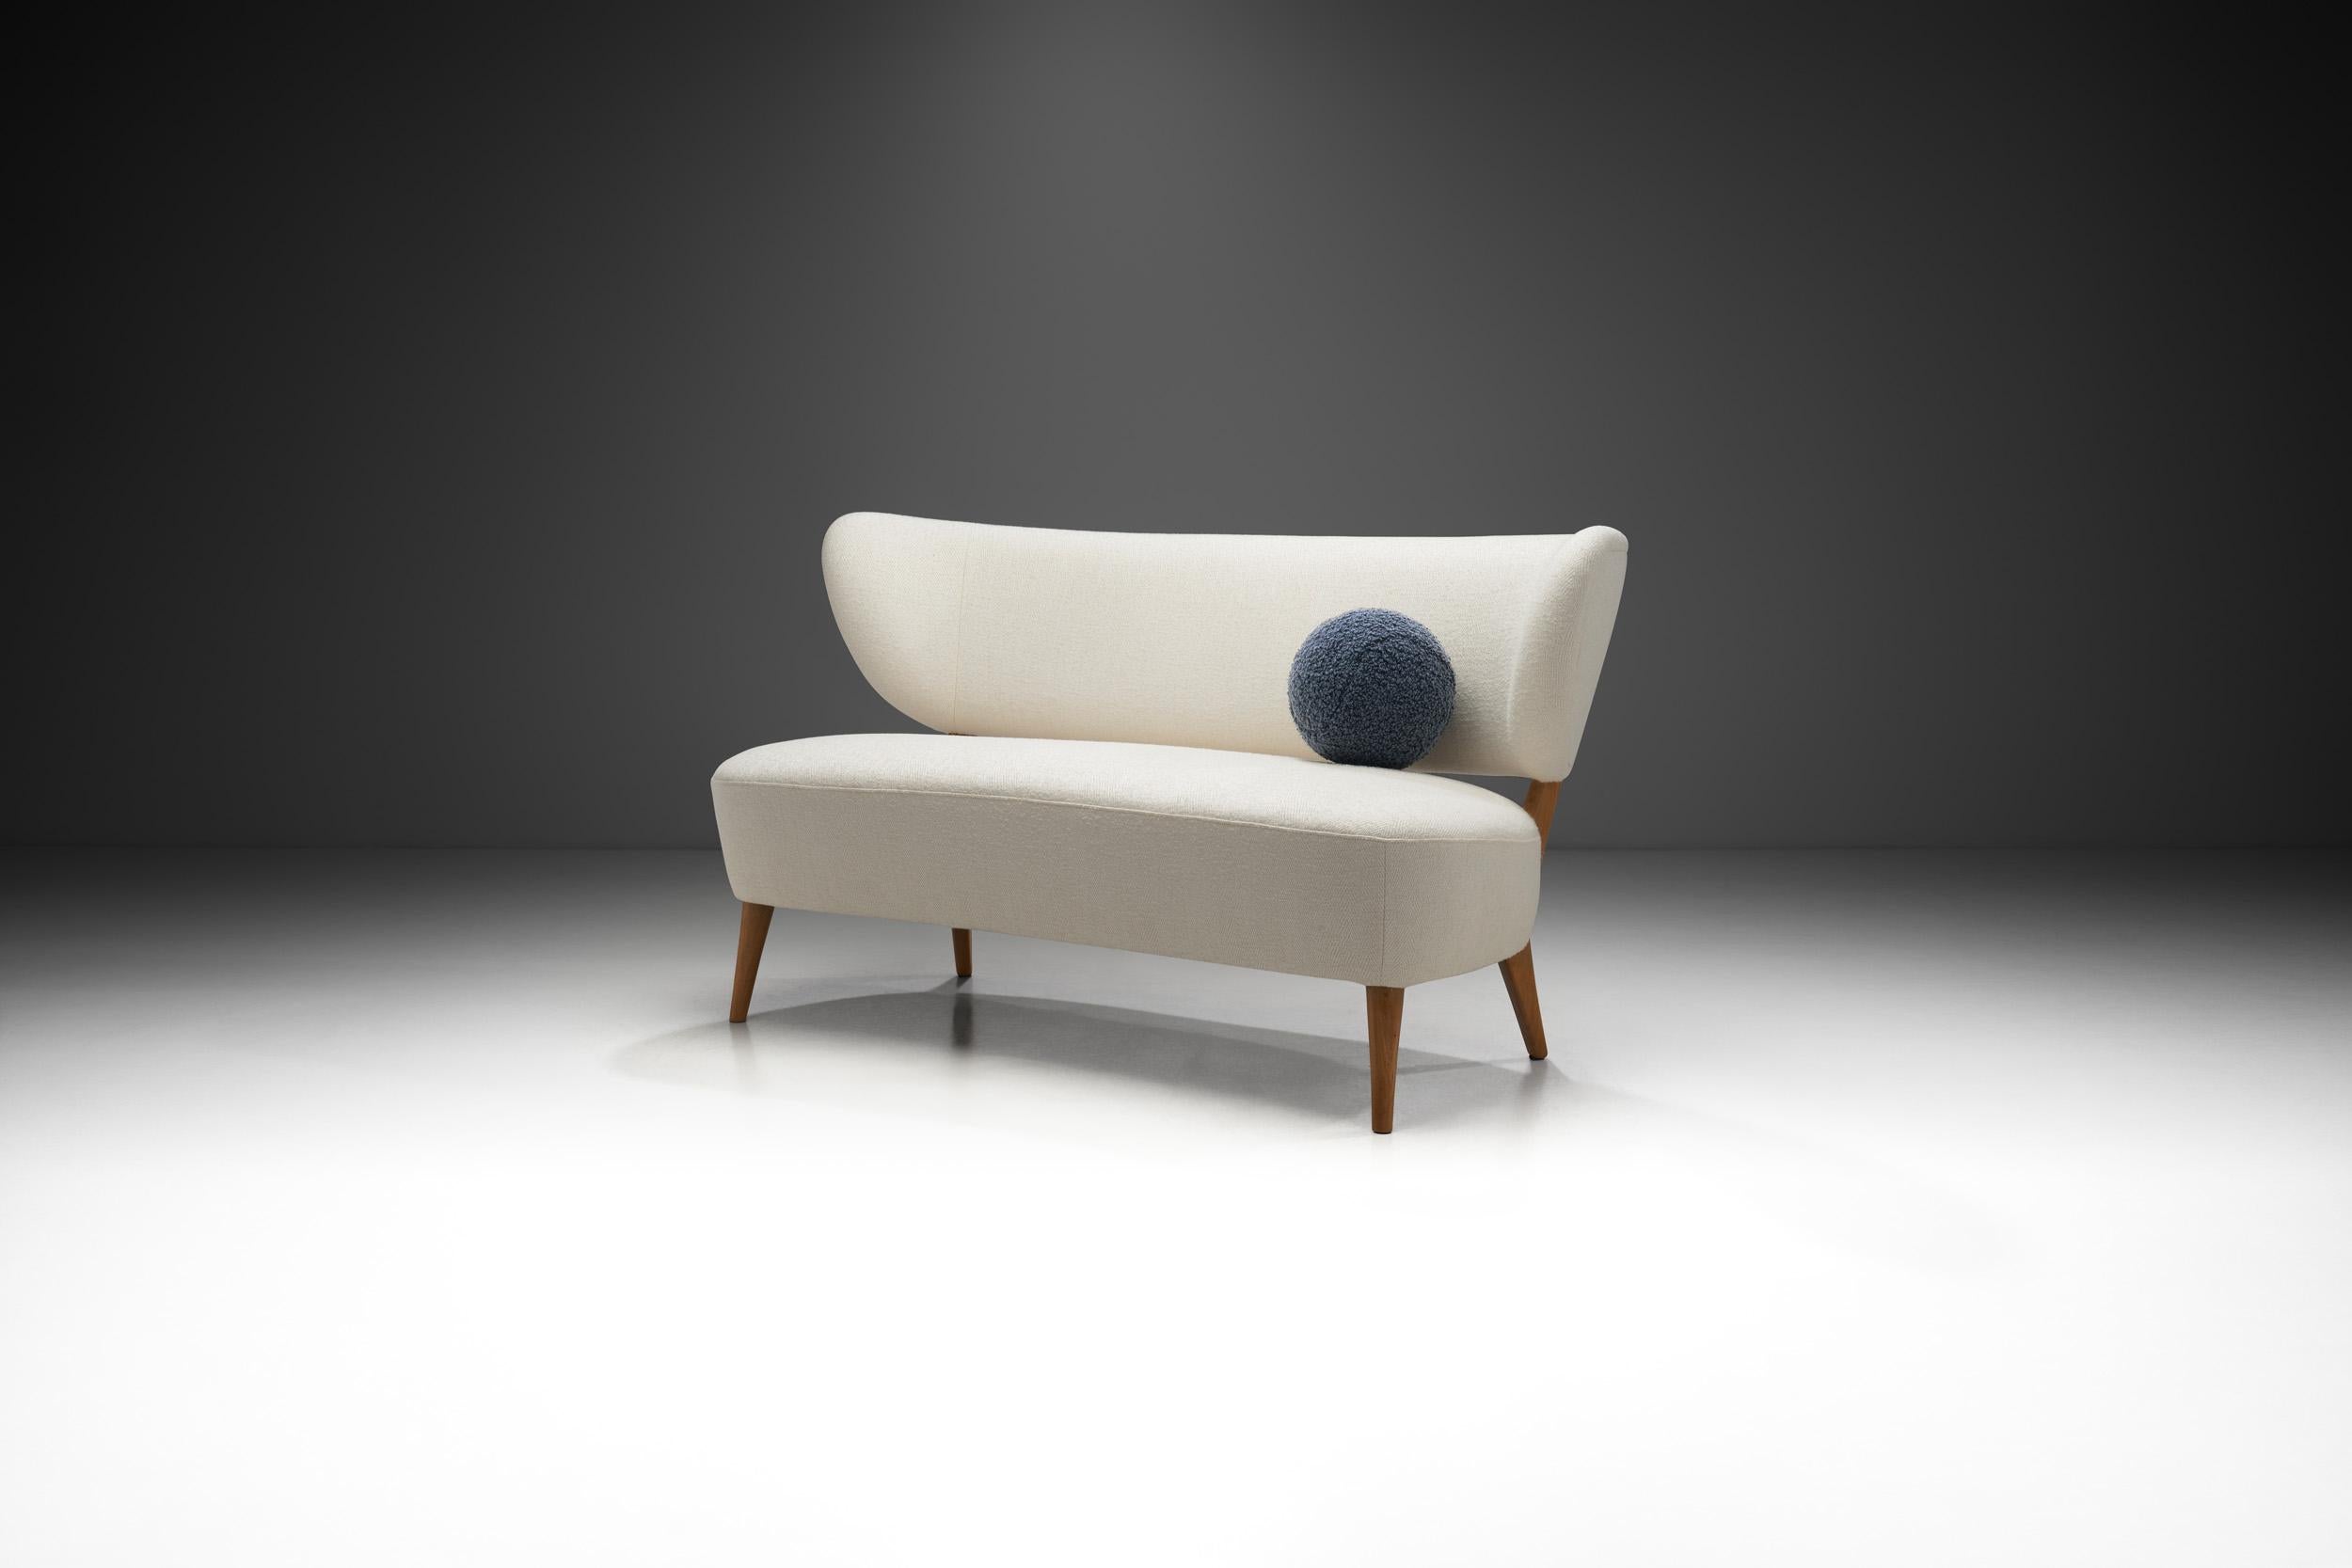 Dieses spektakuläre Zweisitzer-Sofa des schwedischen Designers Otto Schulz ist ein schönes Beispiel für das Repertoire des Möbeldesigners an raffiniert konstruierten Stücken. Mit seiner kreativen und meisterhaft gefertigten Holzstruktur und dem